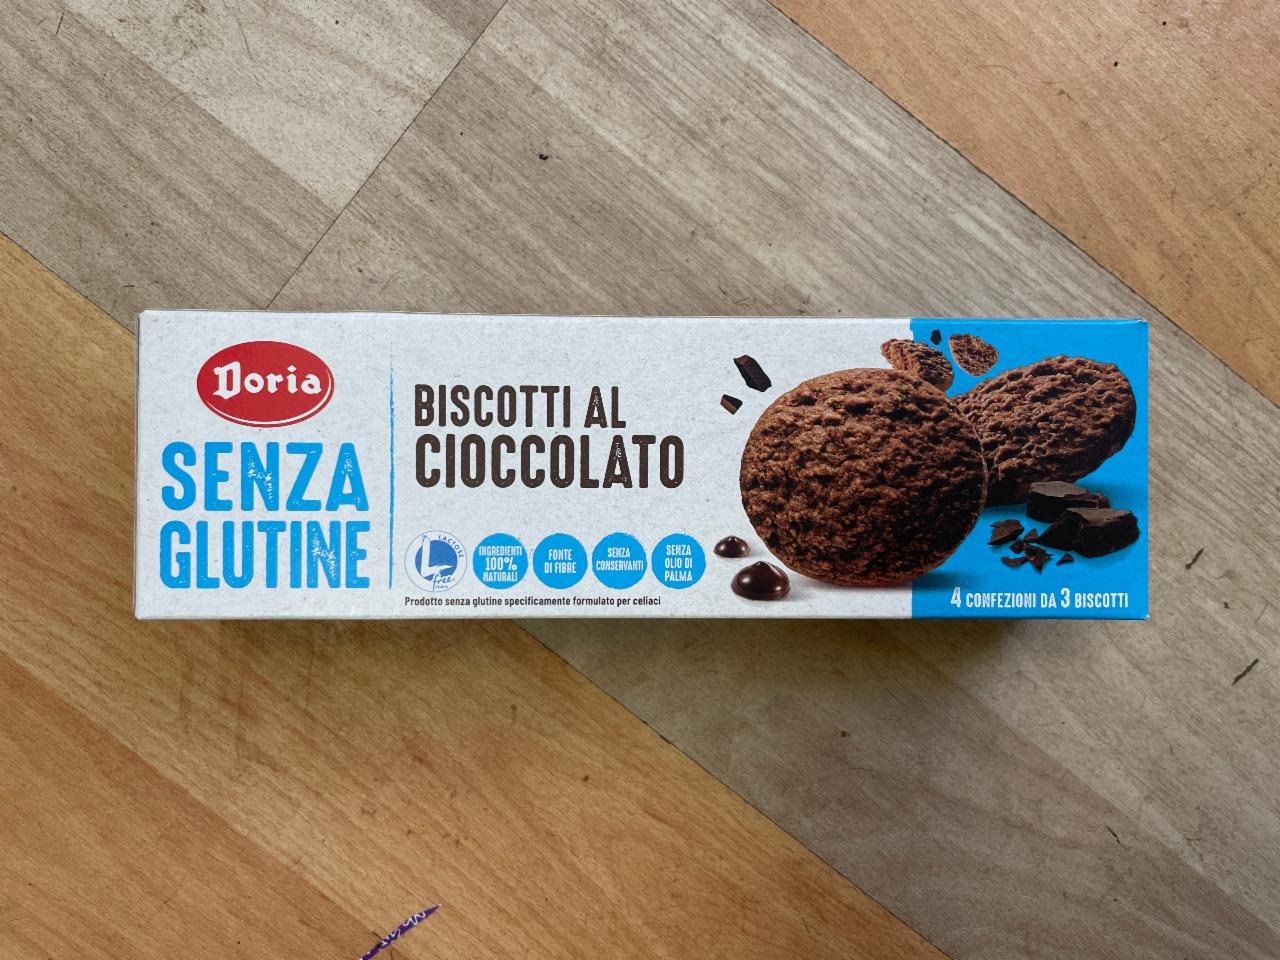 Fotografie - Biscotti al Cioccolato Doria